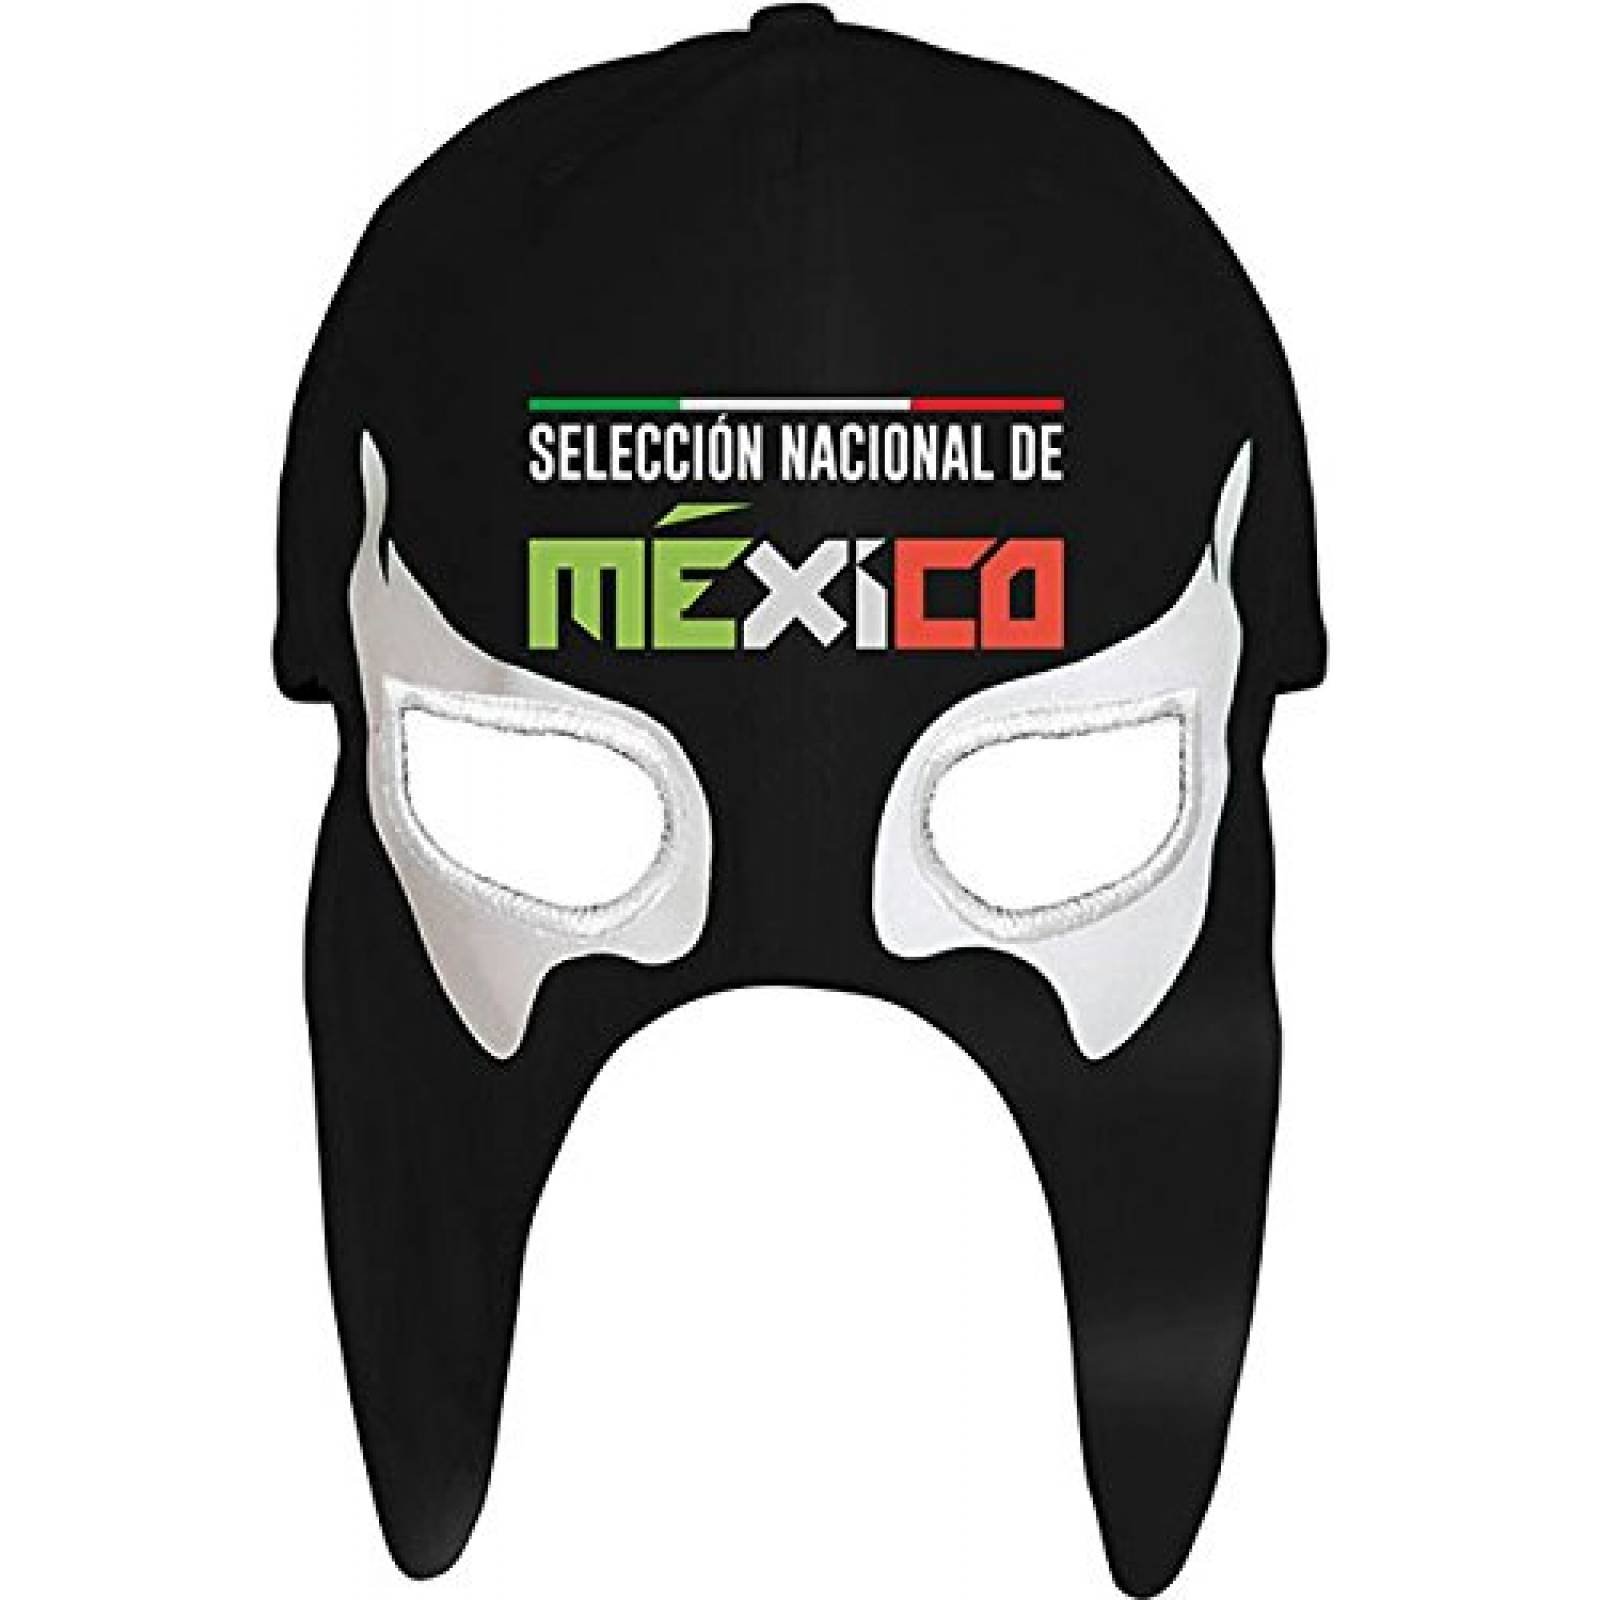 Gorra mascara Negro Seleccion Mexicana